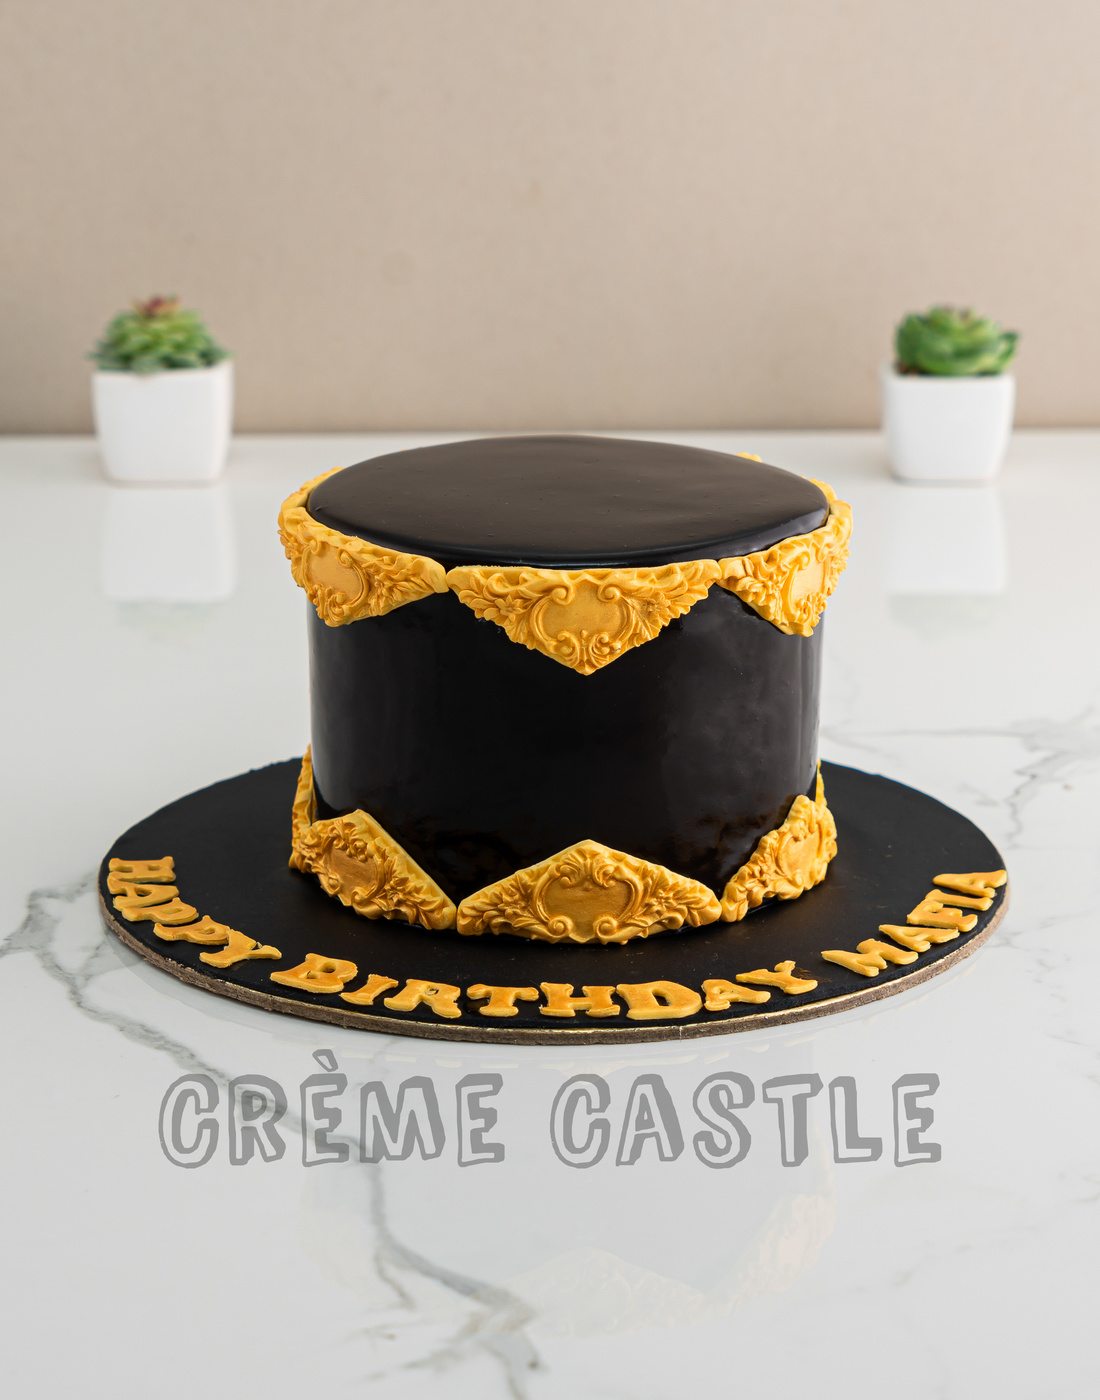 11 Cake borders ideas | cake borders, cake decorating tips, cake decorating